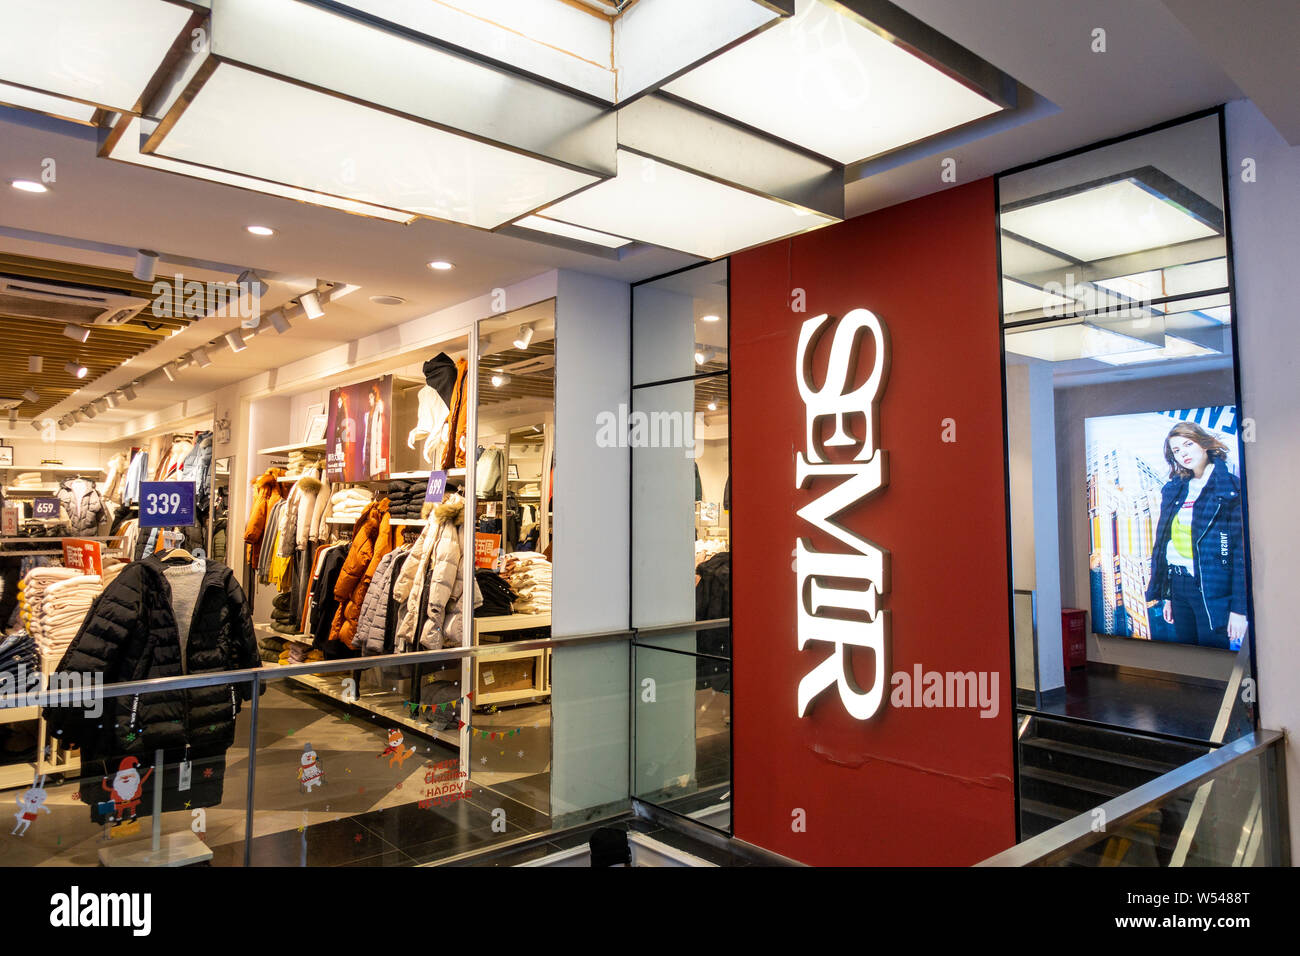 ---- Blick auf eine Semir Store in Shanghai, China, 20. Dezember 2018. Chinesische textilhändler Semi Kleidungsstück plant ein Joint Venture mit Kidiliz Gruppe Stockfoto